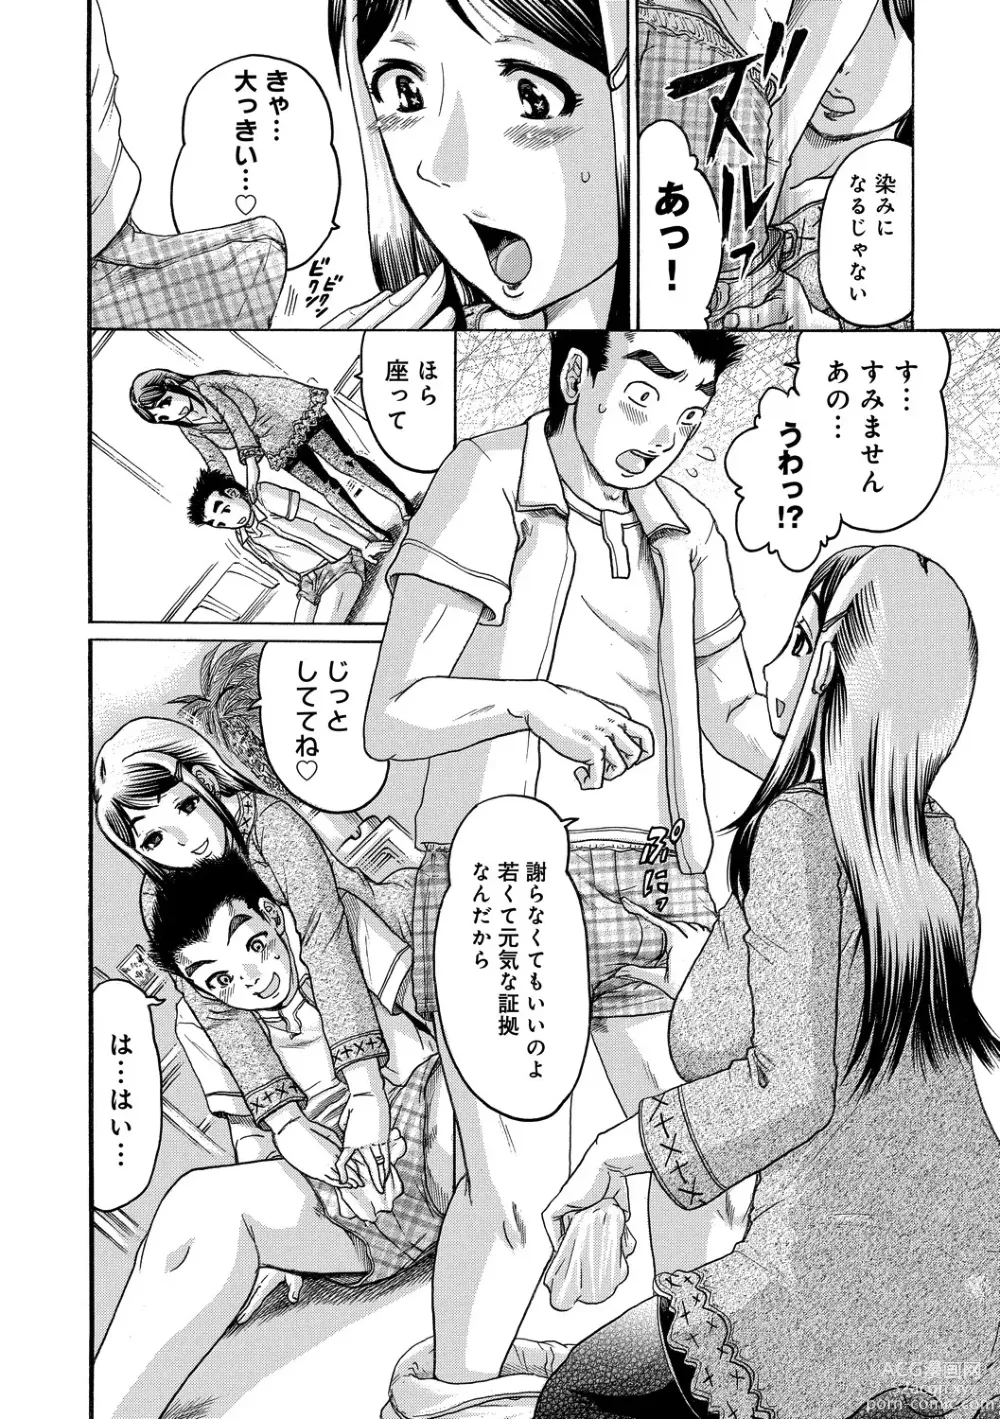 Page 196 of manga Kanojo wo Dorei ni Otoshitara